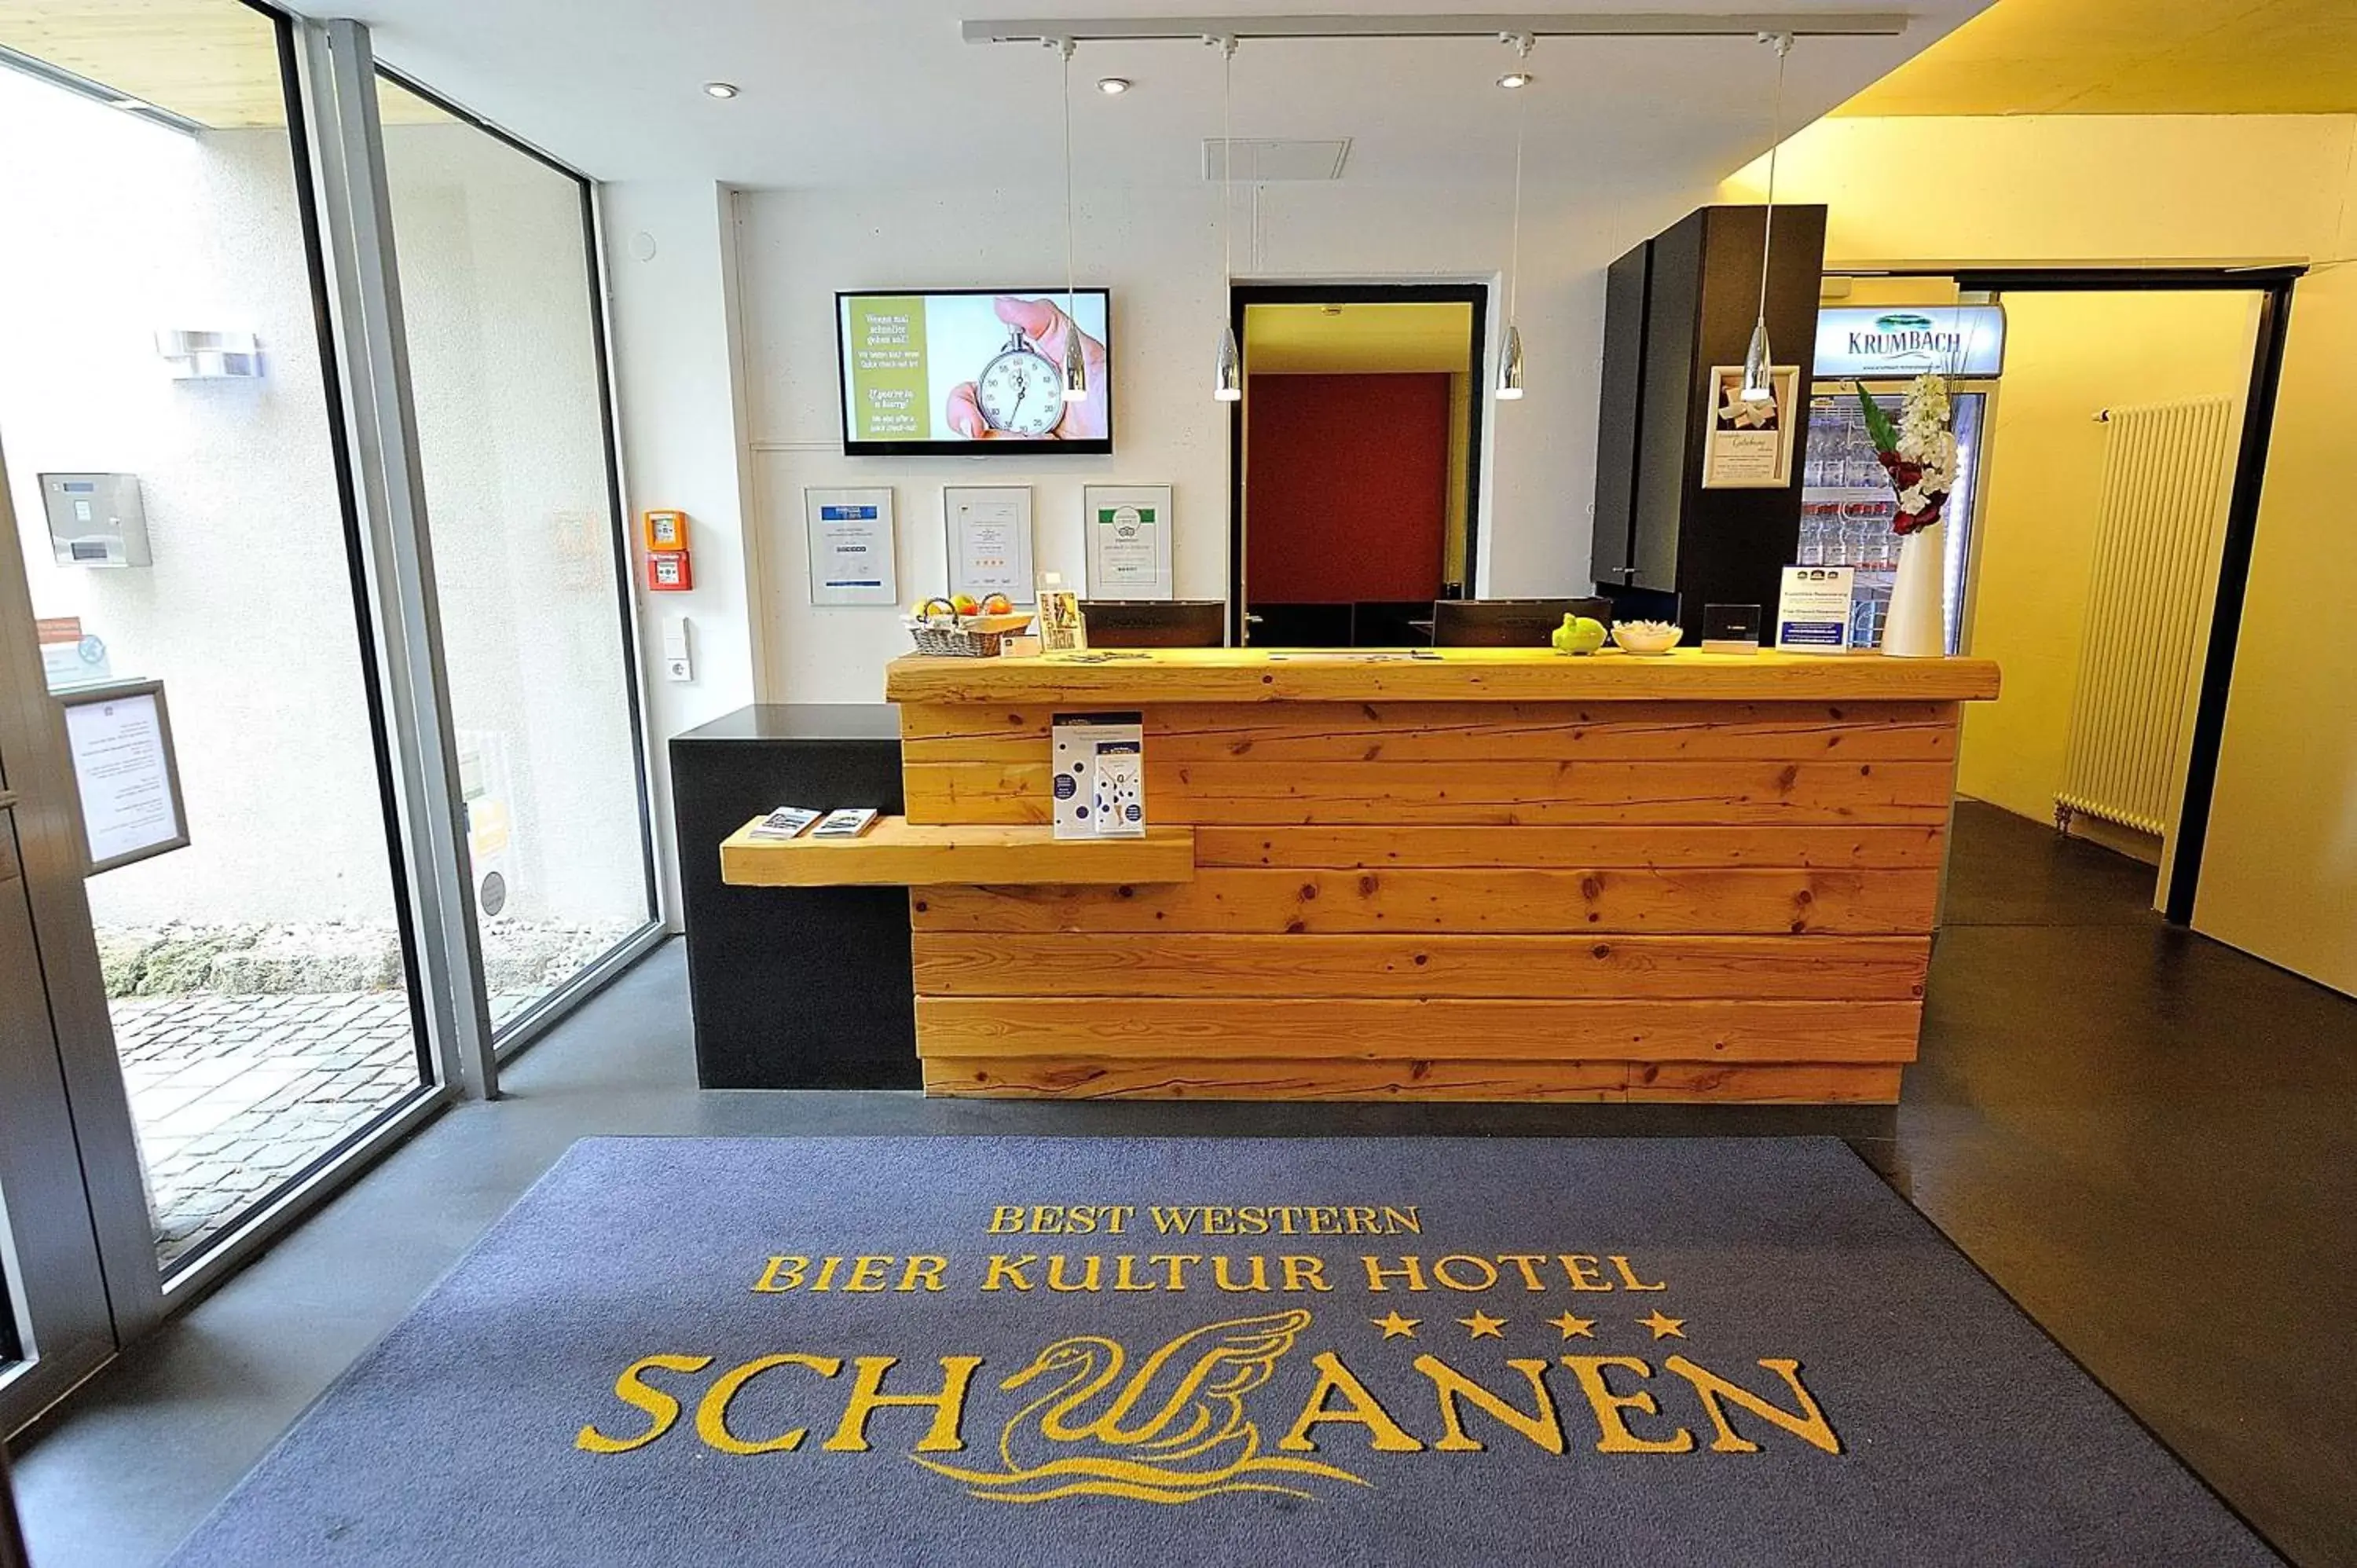 Lobby or reception, Lobby/Reception in Best Western Plus BierKulturHotel Schwanen